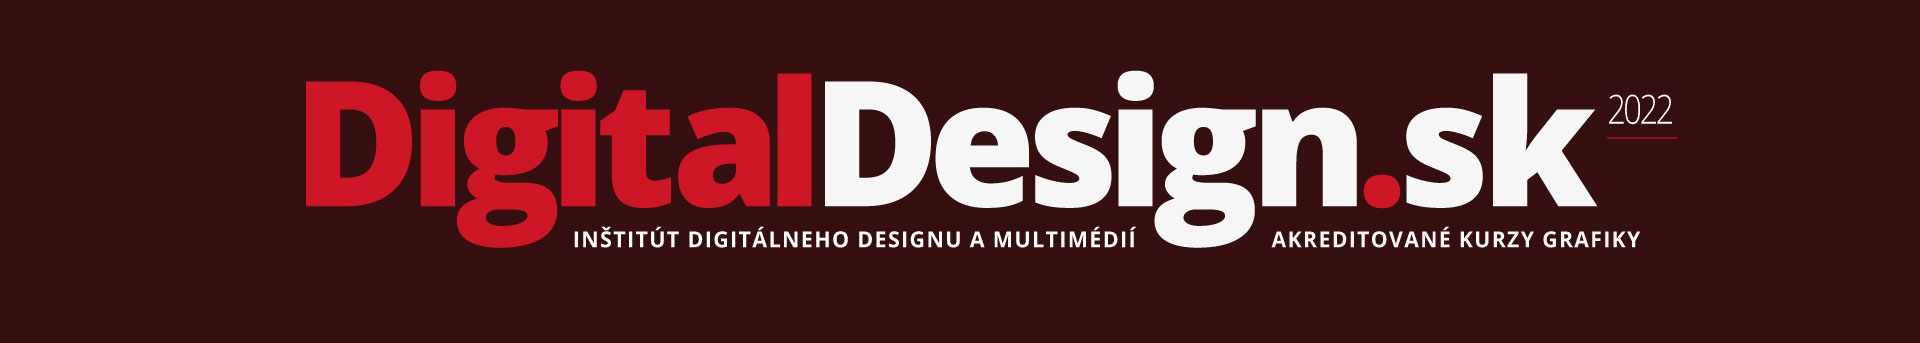 DigitalDesign.sk 2022 = akreditované kurzy grafiky, kurzy Adobe Illustrator, kurzy Photoshop,, kurzy InDesign, kurzy Corel, kurzy tvorba webstránok, kurzy grafický design, kurzy webdesign, kurzy KOMPAS, Košice, Prešov